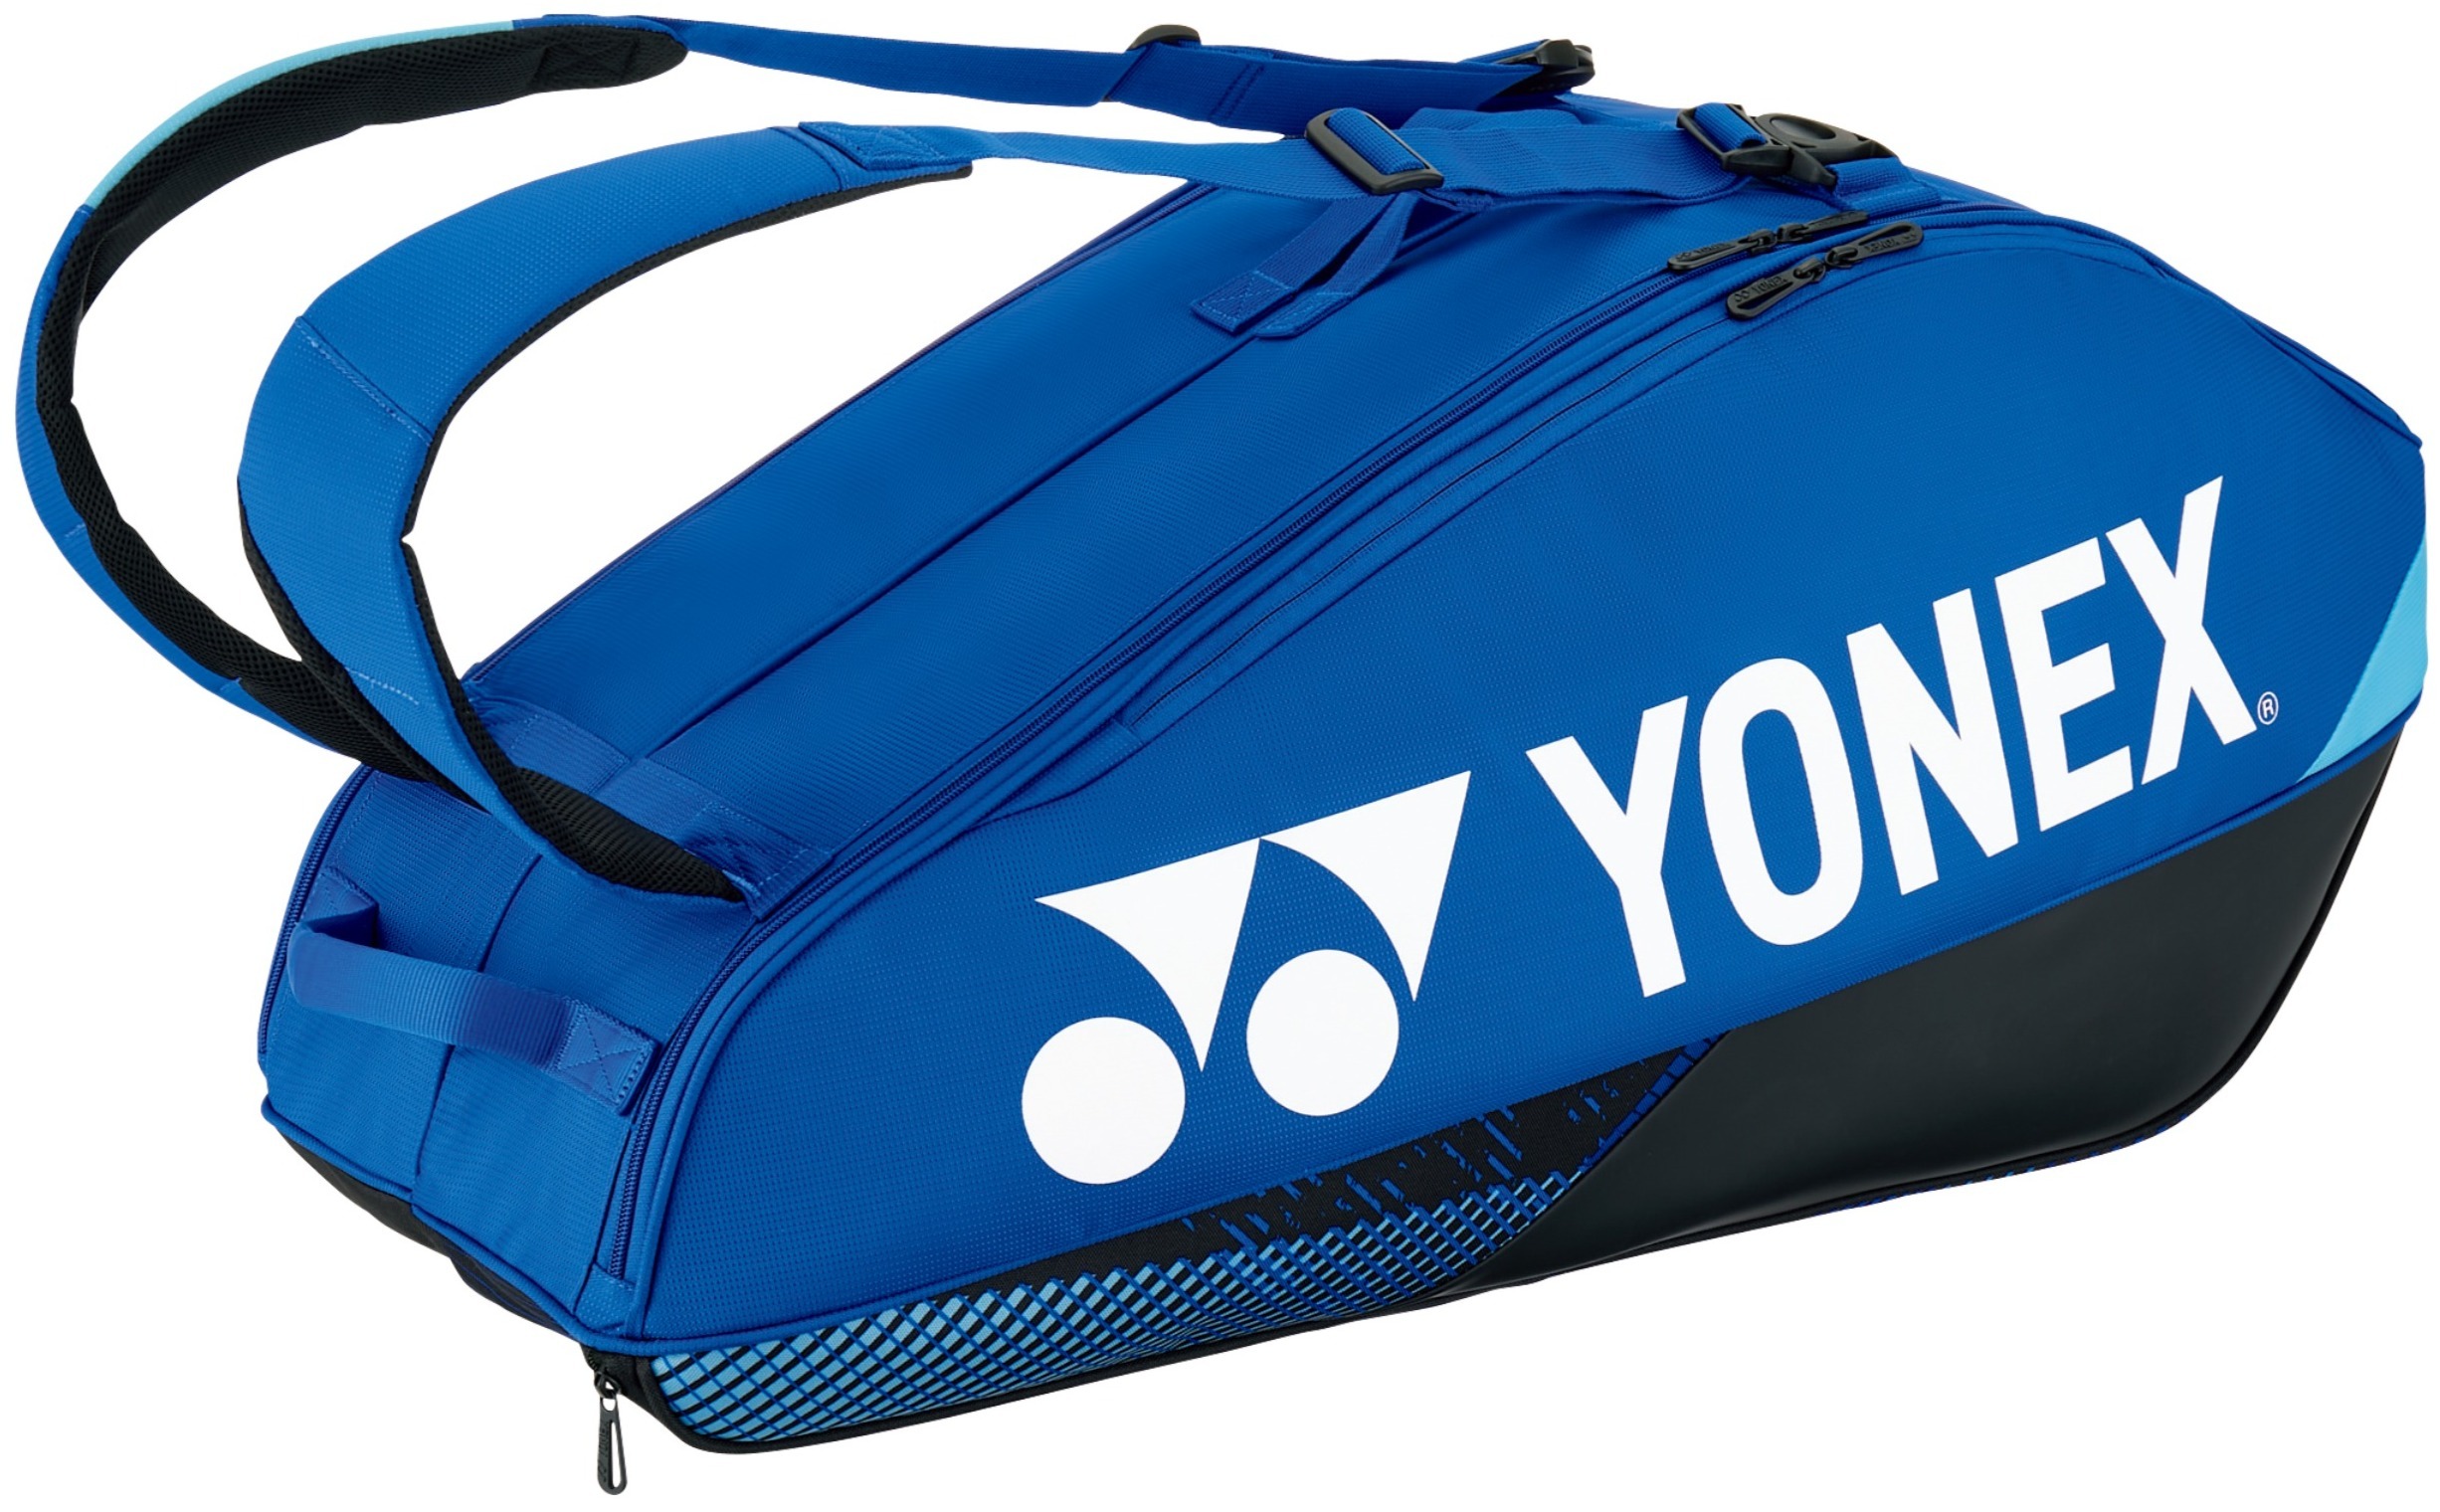 Yonex Pro 6 Racquet Tennis Bag (Cobalt Blue)